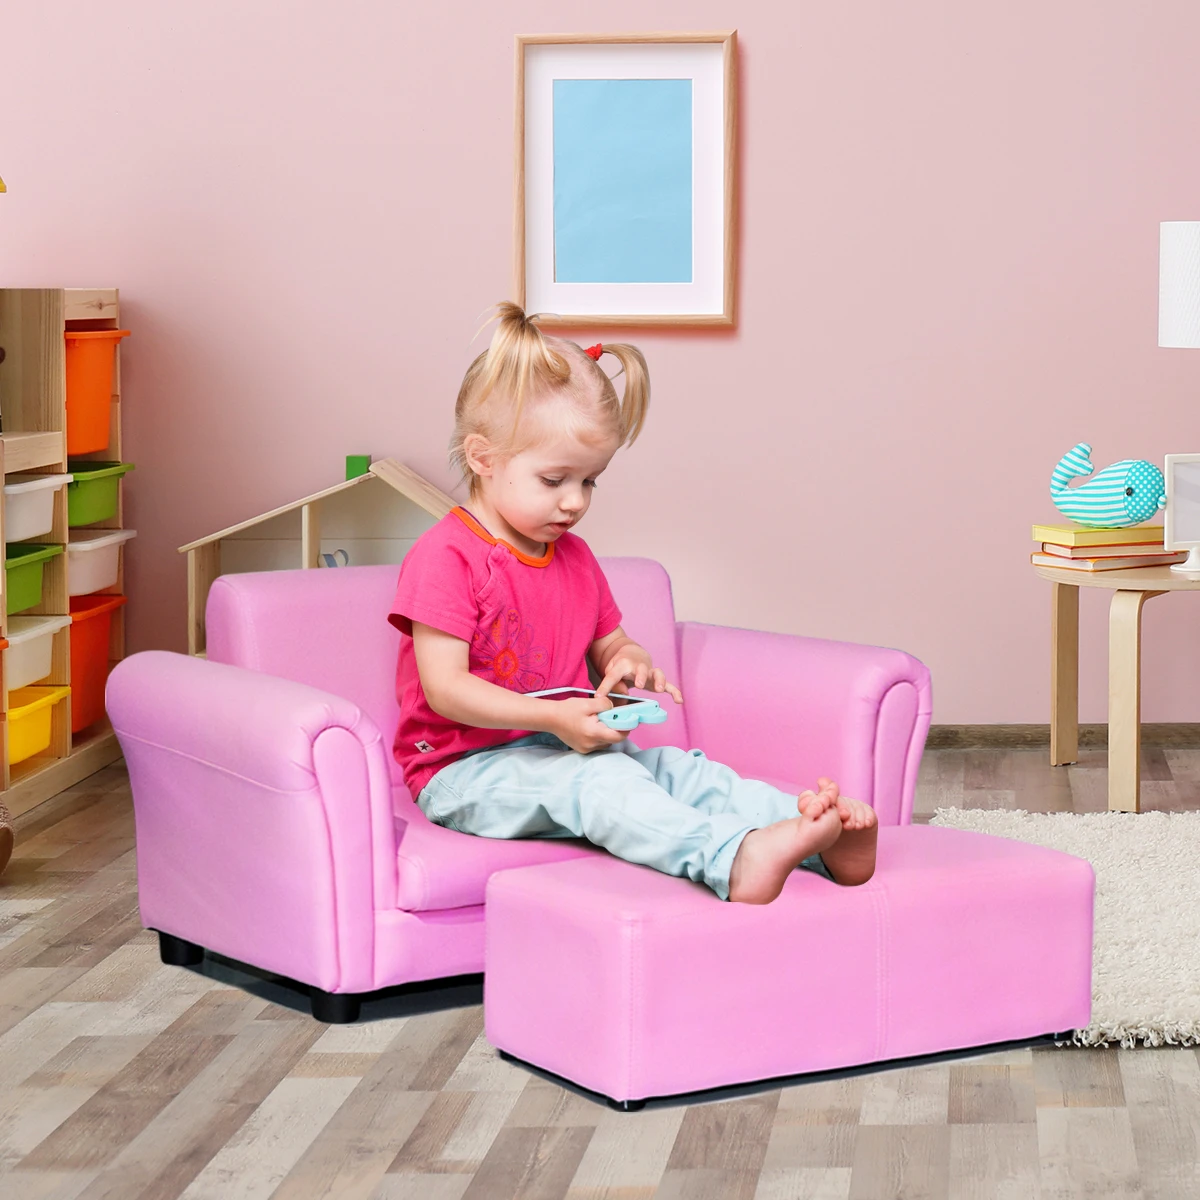 Sofá infantil costway rosa com braço estilo poltrona sala de estar presente  de aniversário infantil com otomana|Sofás infantis| - AliExpress